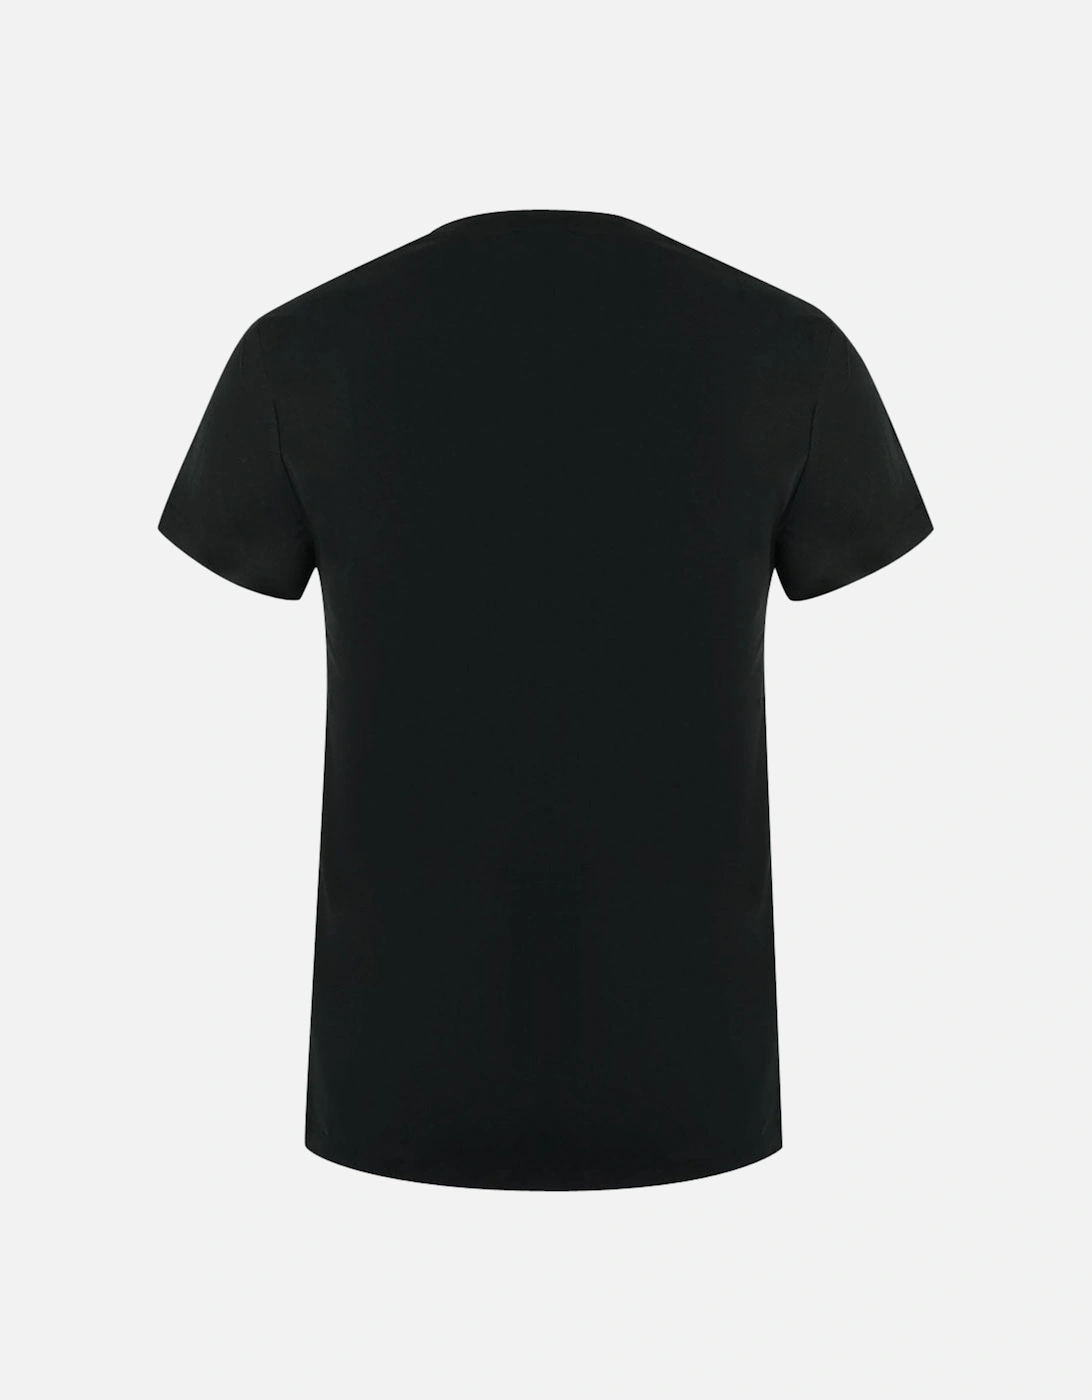 Very Very Logo Black T-Shirt